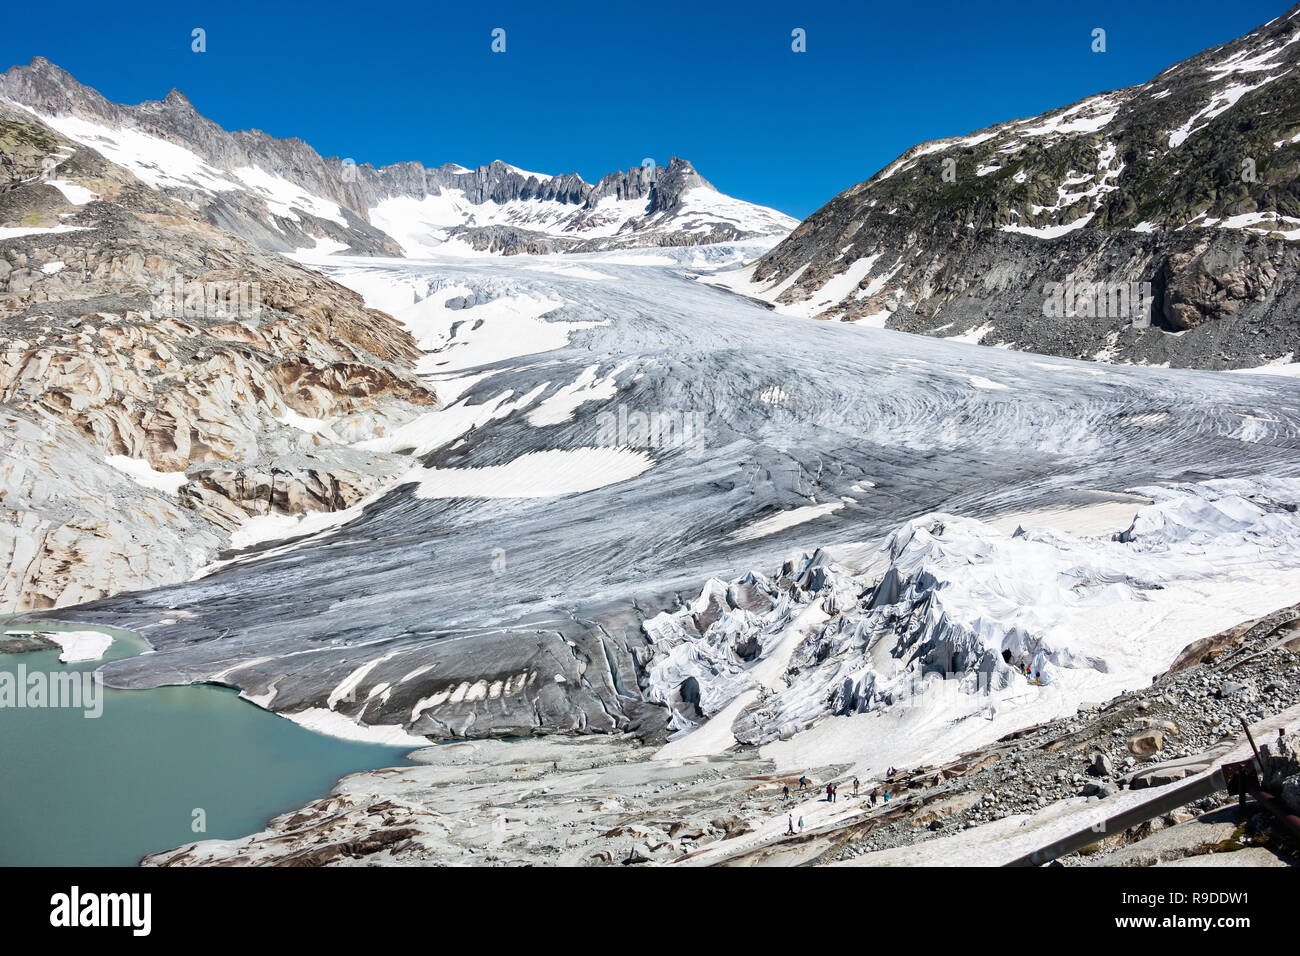 Al ghiacciaio del Rodano è possibile raggiungere a piedi sul ghiacciaio e visitare una grotta di ghiaccio, Vallese, Svizzera Foto Stock